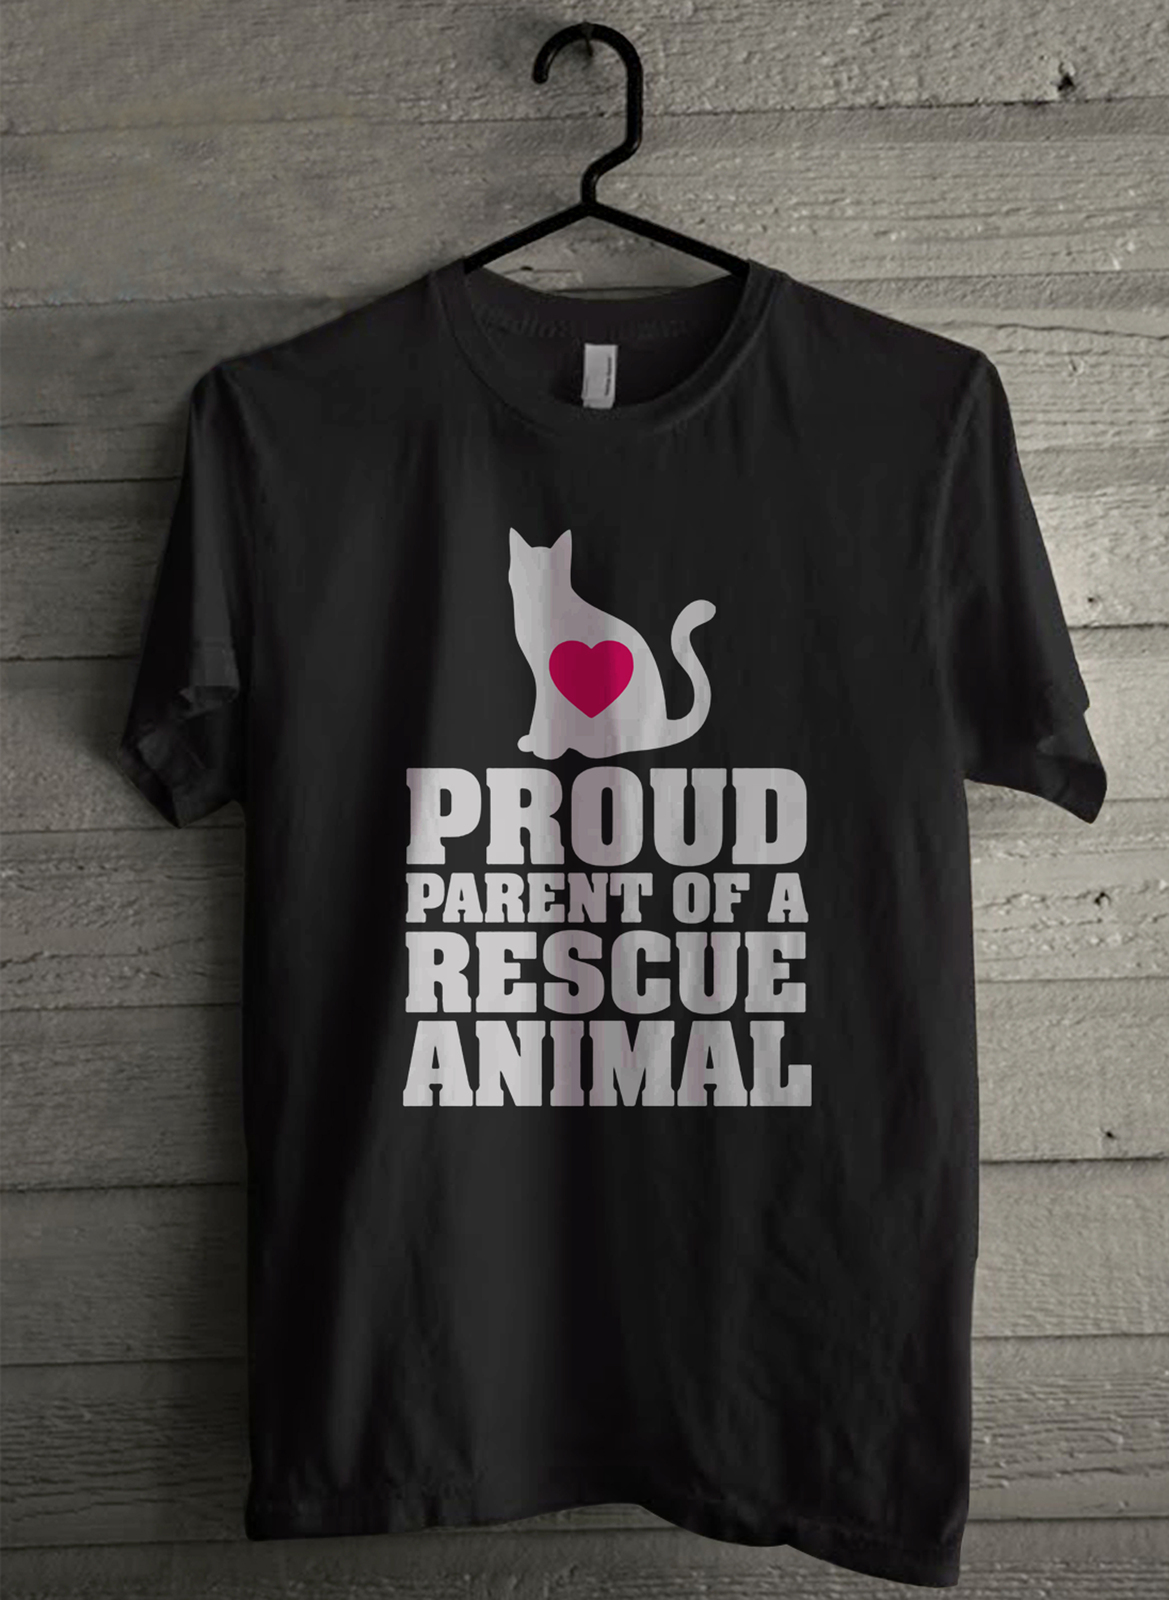 Parent of rescue animal Men's T-Shirt - Custom (3980) - $19.12 - $21.82